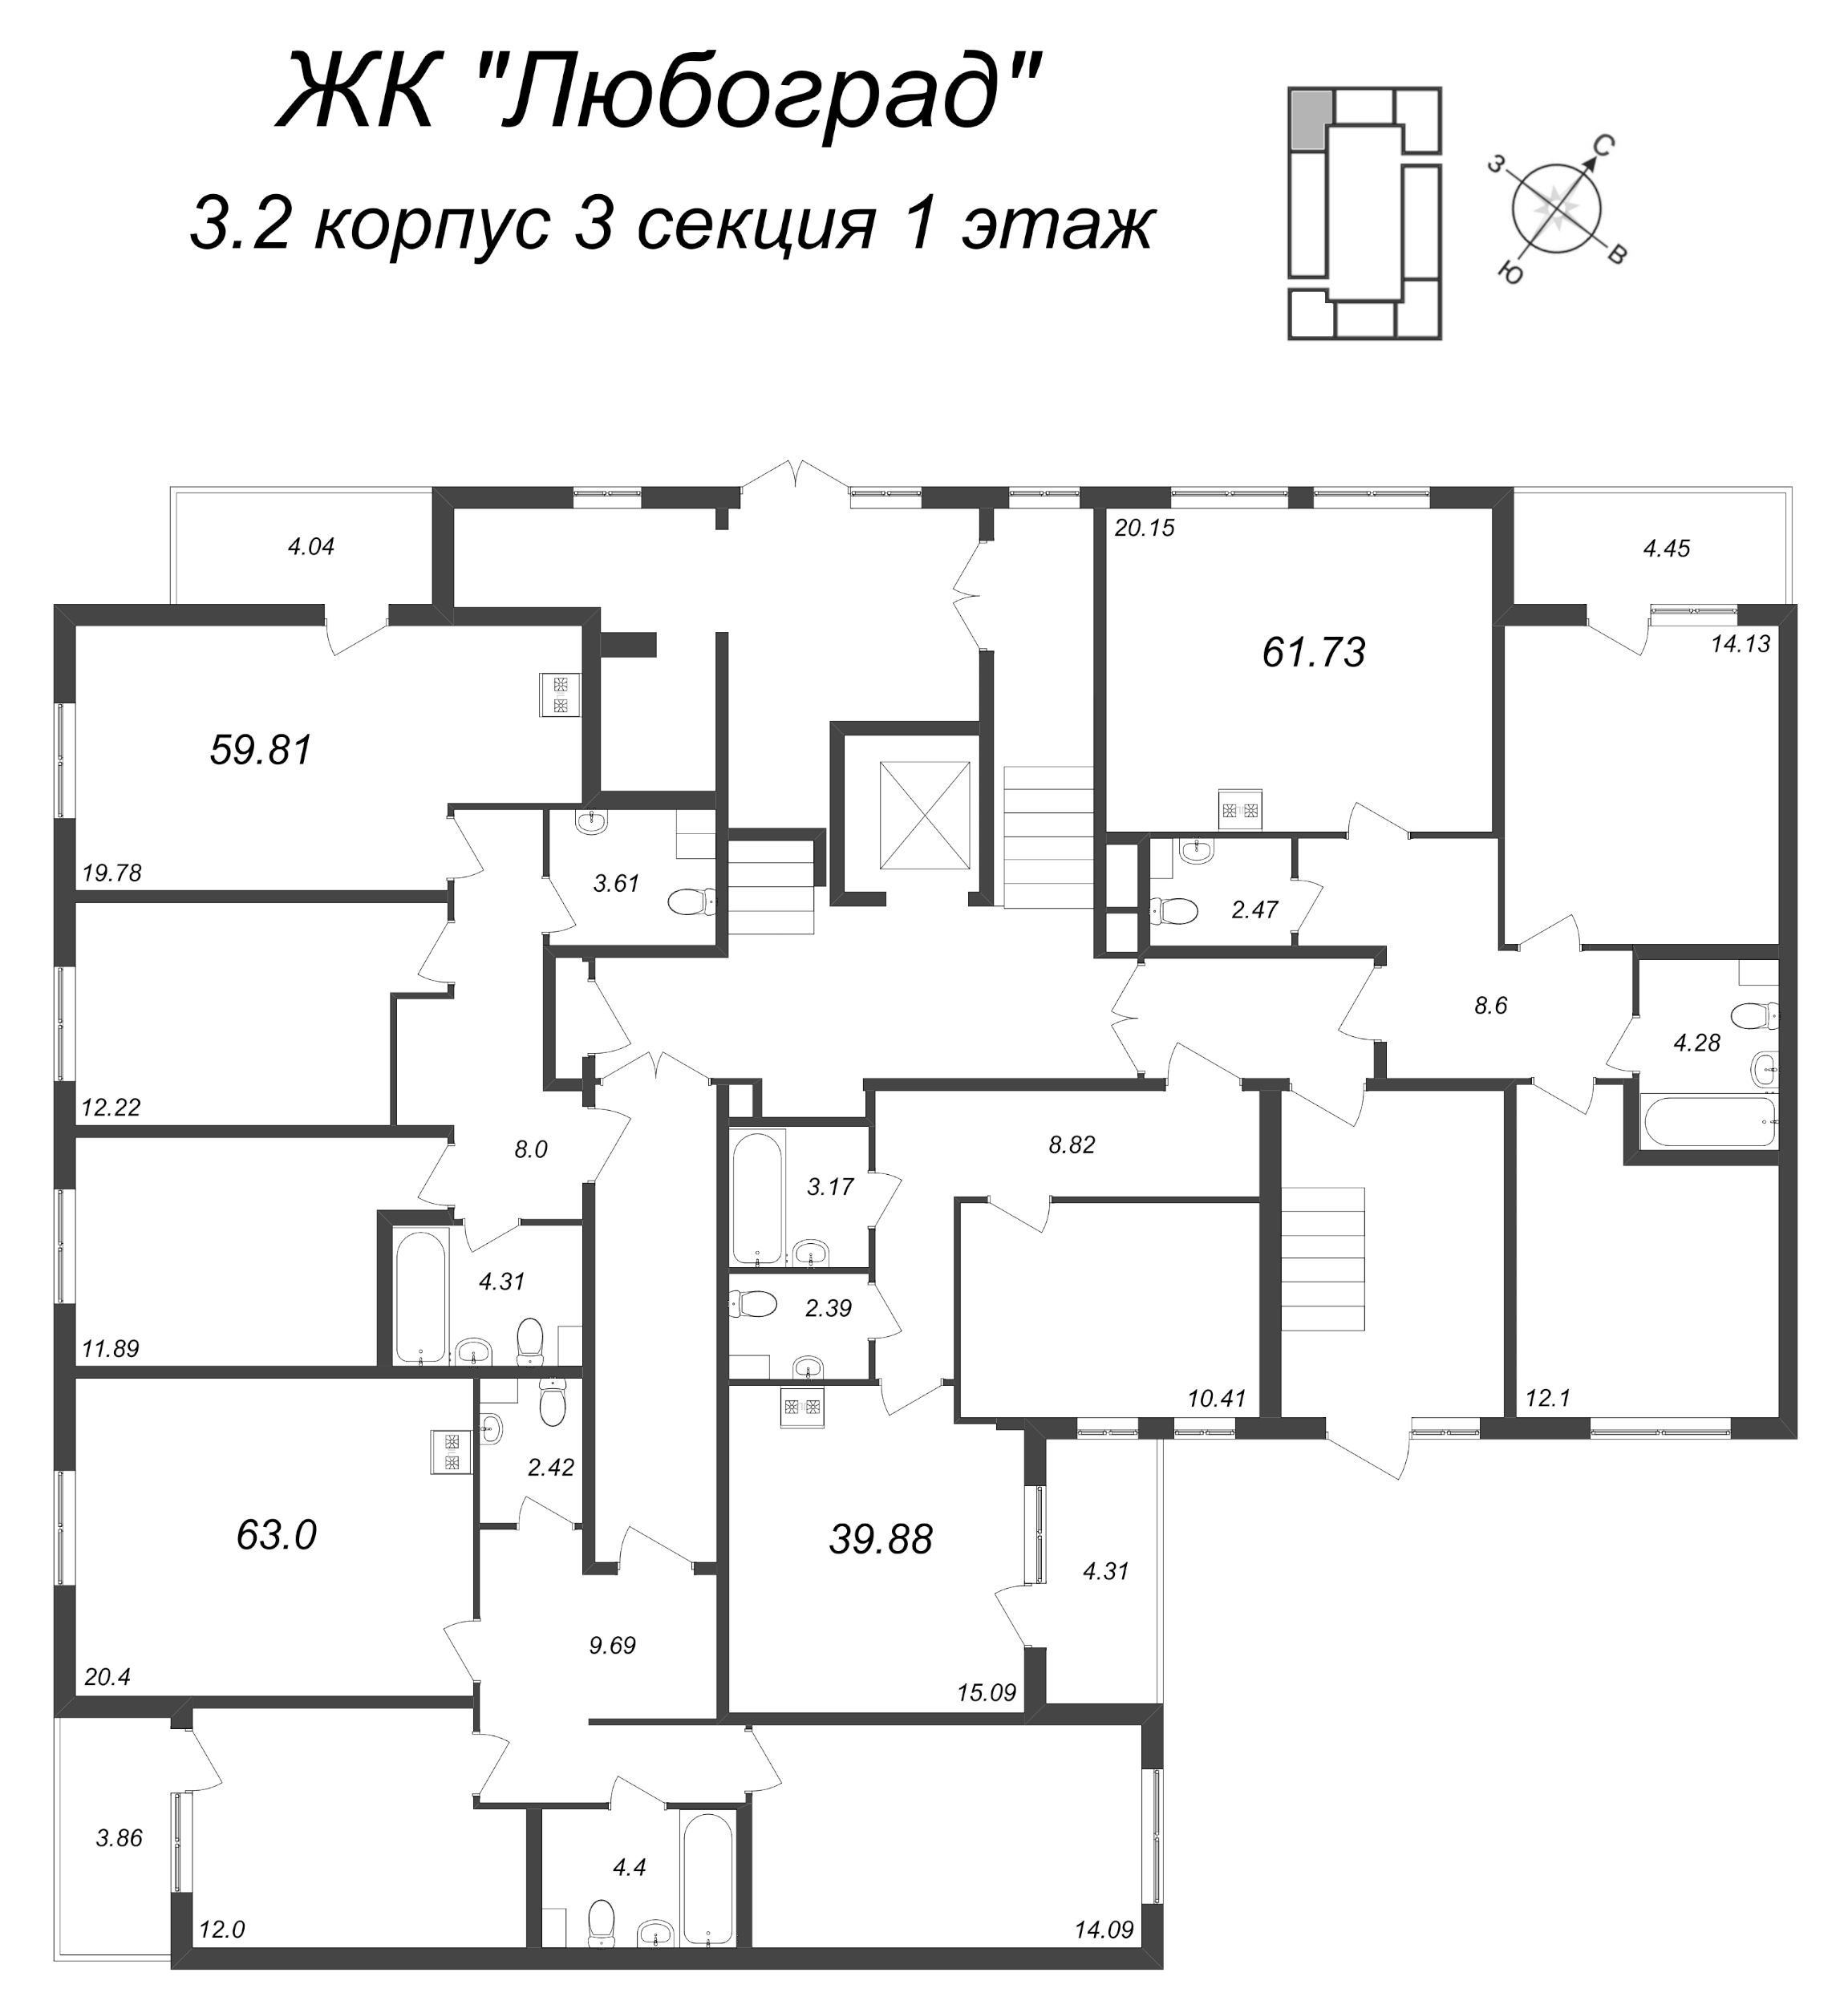 2-комнатная (Евро) квартира, 39.88 м² в ЖК "Любоград" - планировка этажа